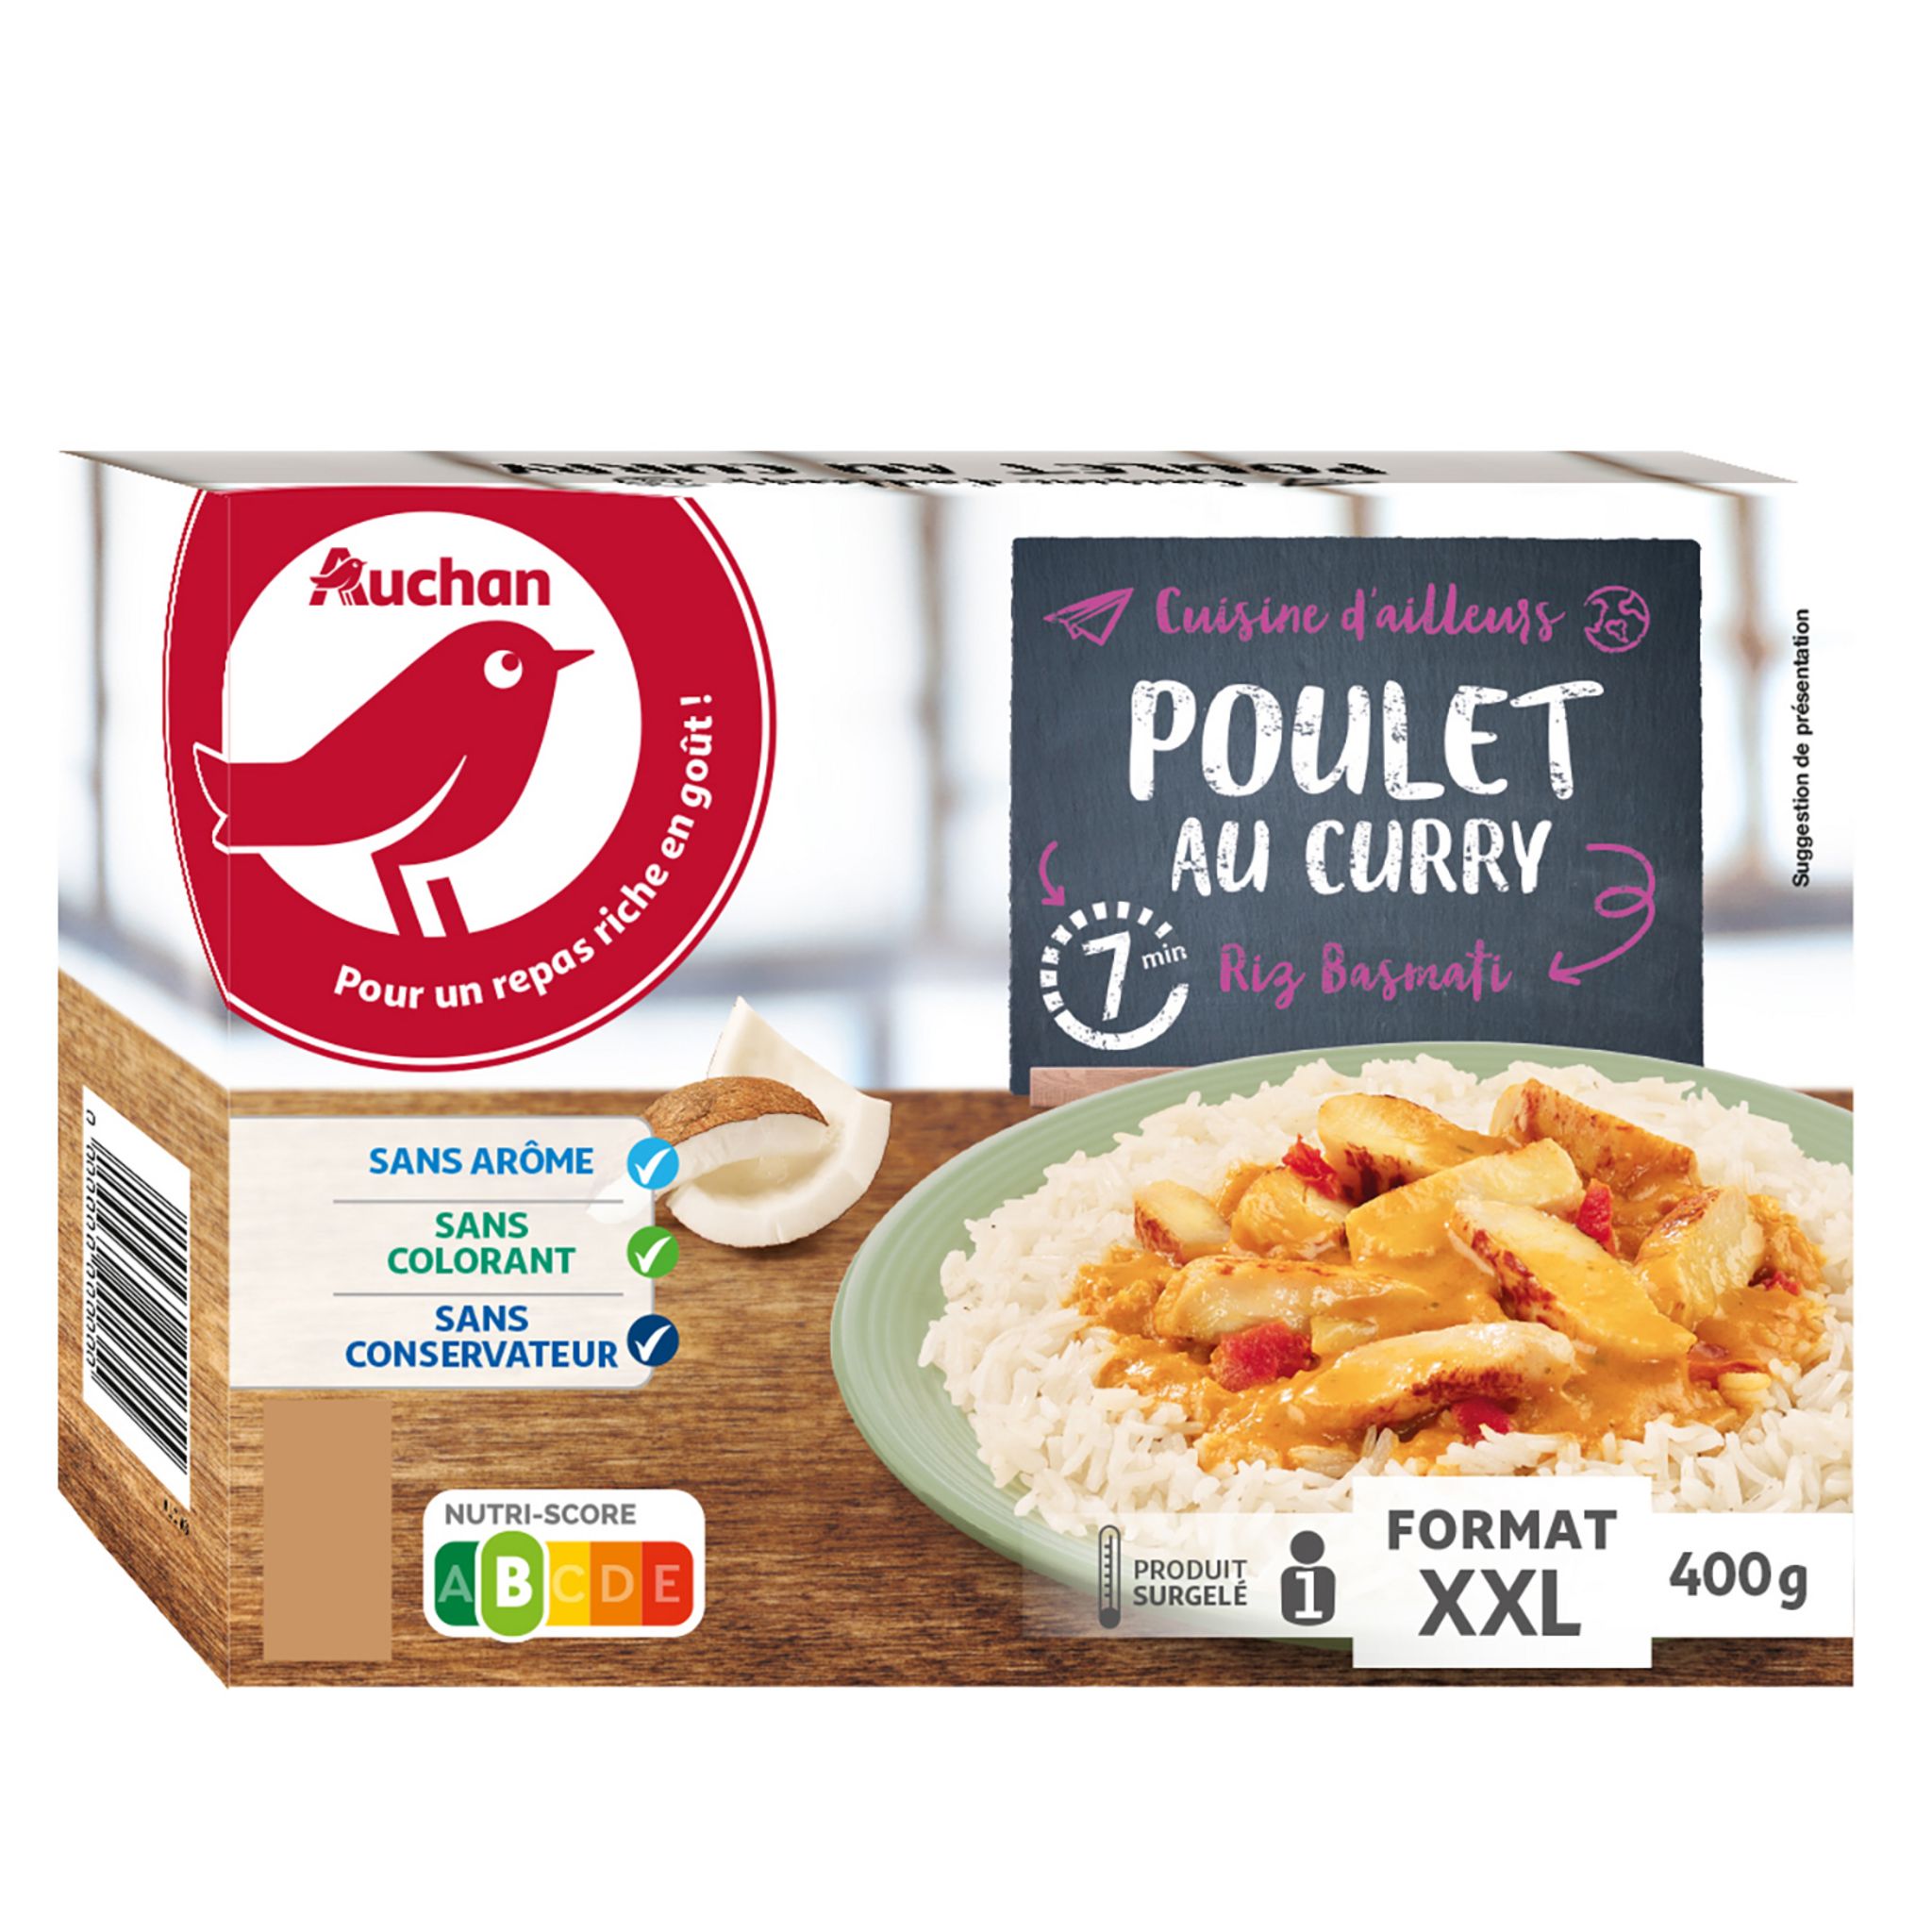 Riz & poulet curry - 4 personnes - Primeur Express - Le marché qui